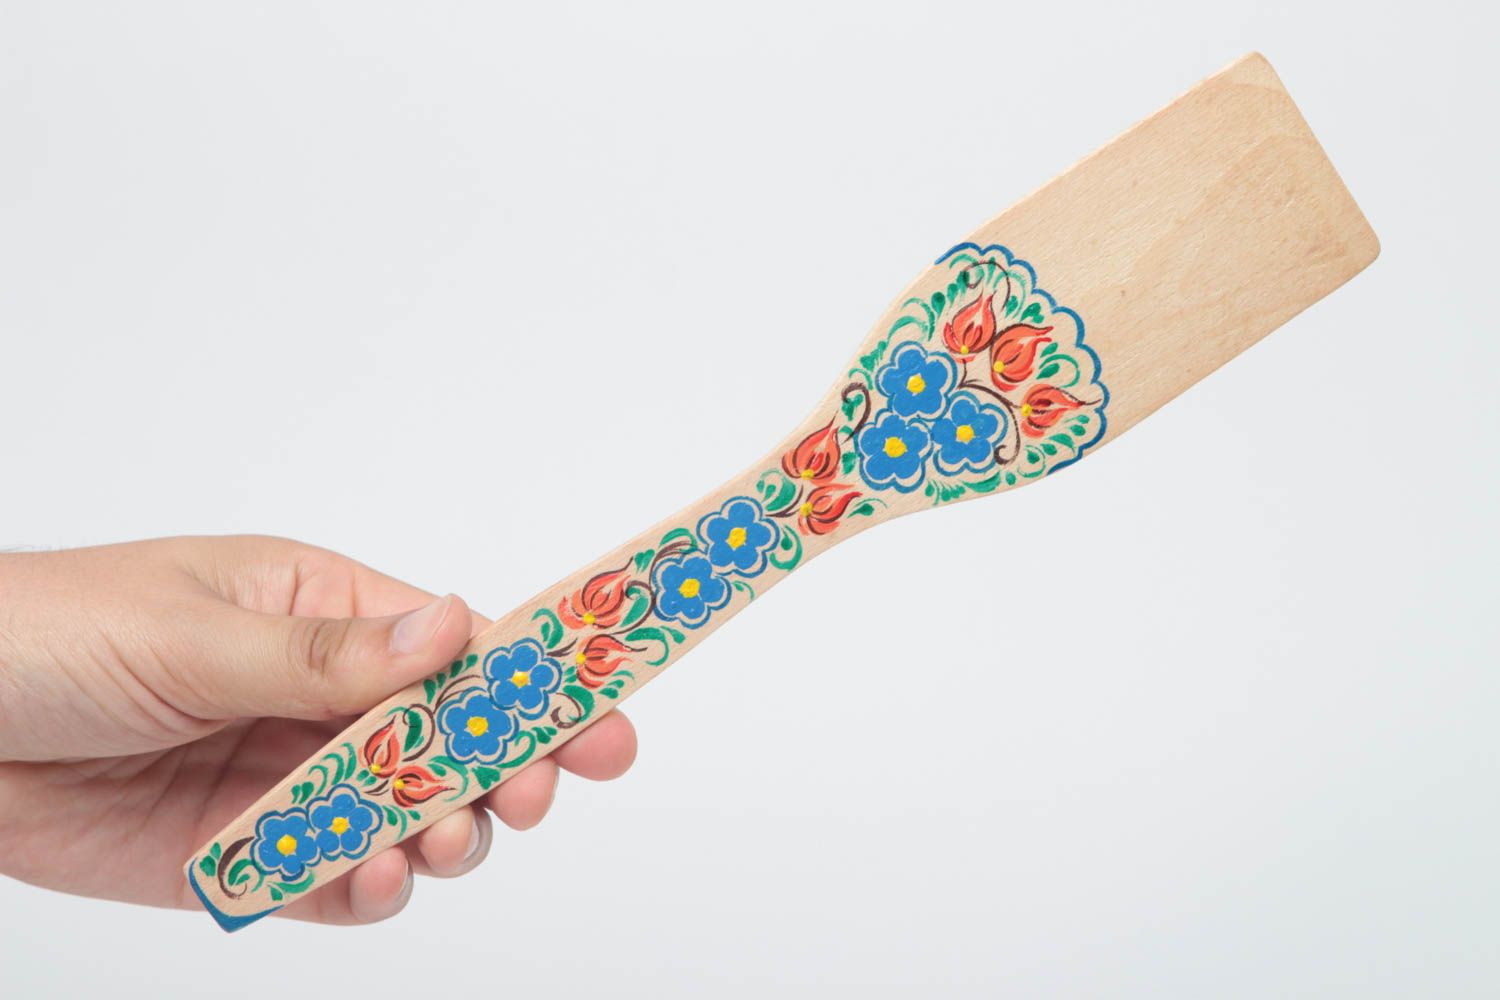 Decorative handmade wooden spatula kitchen accessories designs gift ideas photo 5